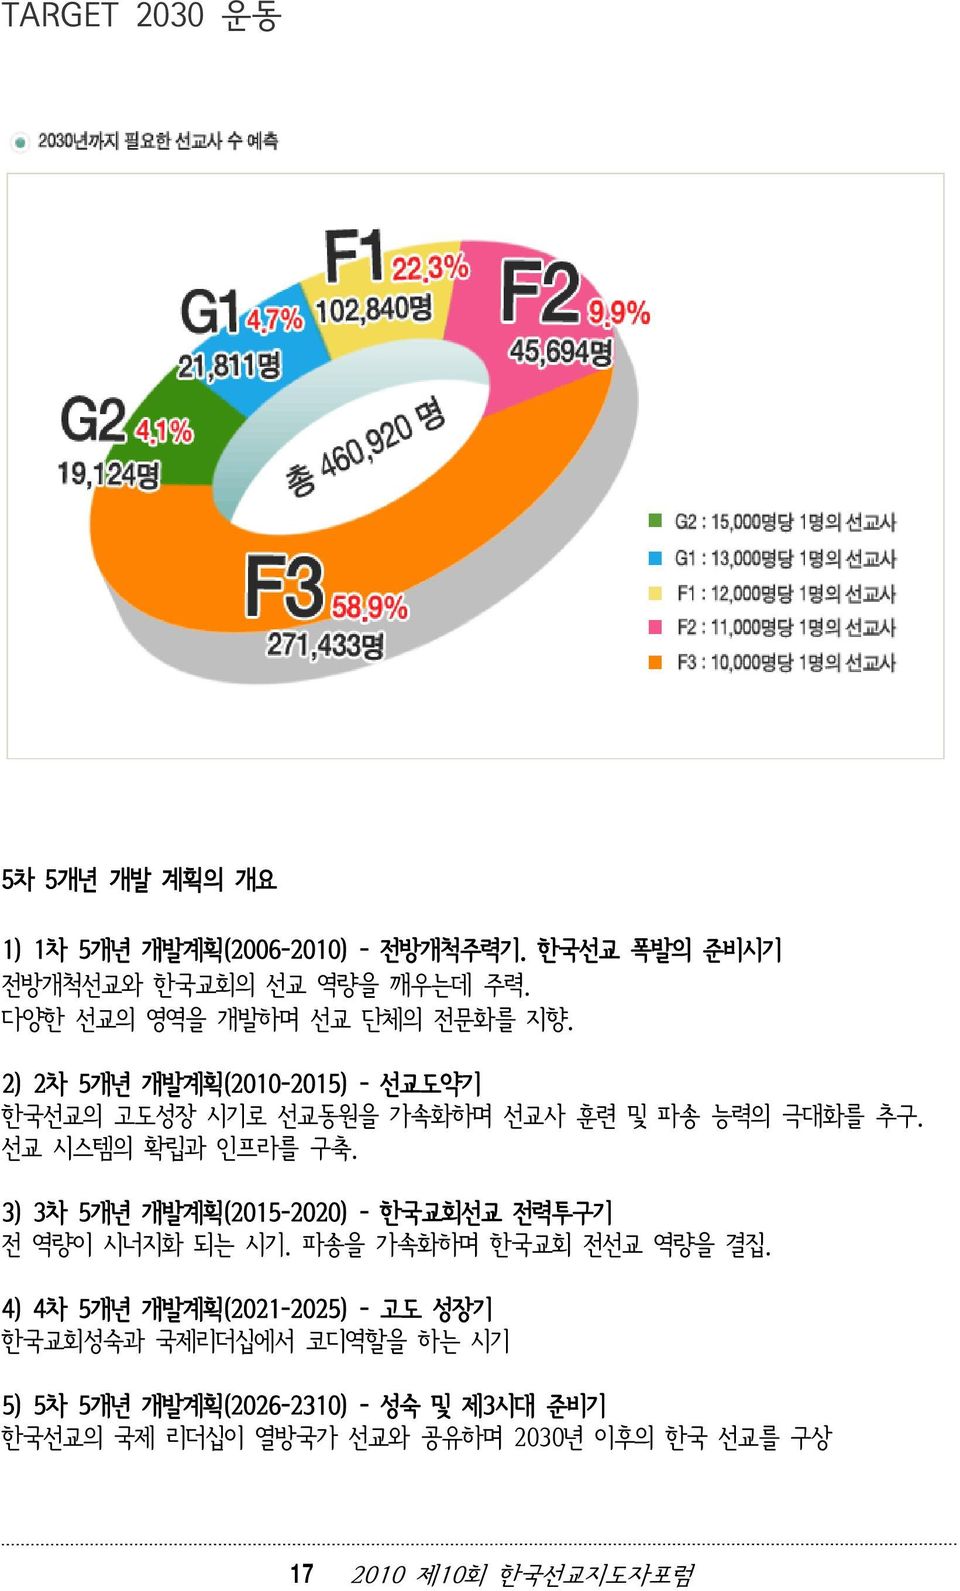 선교 시스템의 확립과 인프라를 구축. 3) 3차 5개년 개발계획(2015-2020) - 한국교회선교 전력투구기 전 역량이 시너지화 되는 시기. 파송을 가속화하며 한국교회 전선교 역량을 결집.